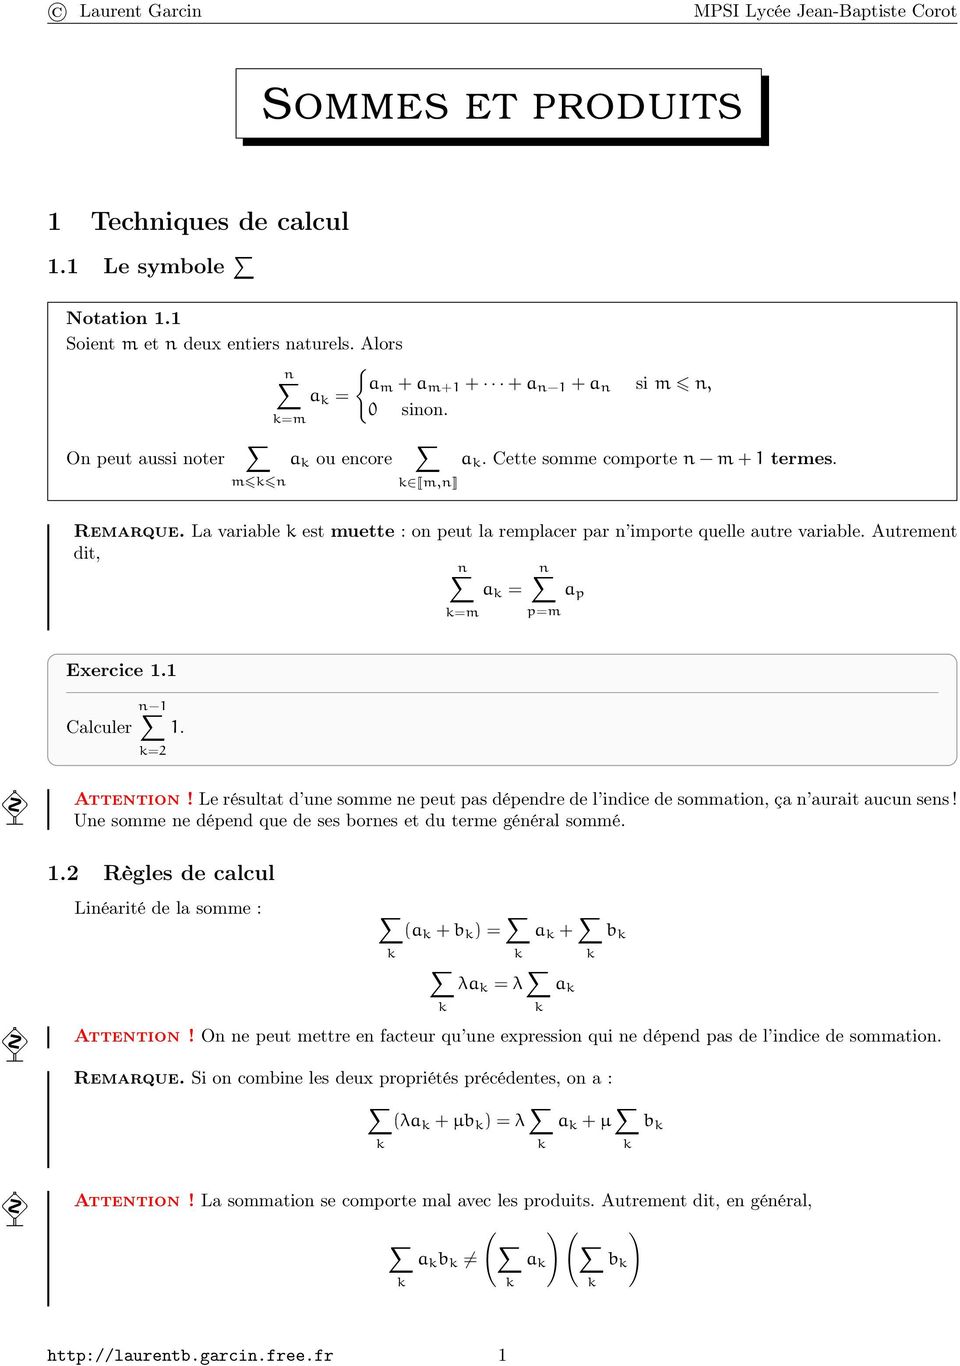 SOMMES ET PRODUITS. 1 Techniques de calcul. 1.1 Le symbole. 1.2 Règles de  calcul. Laurent Garcin MPSI Lycée Jean-Baptiste Corot - PDF Free Download